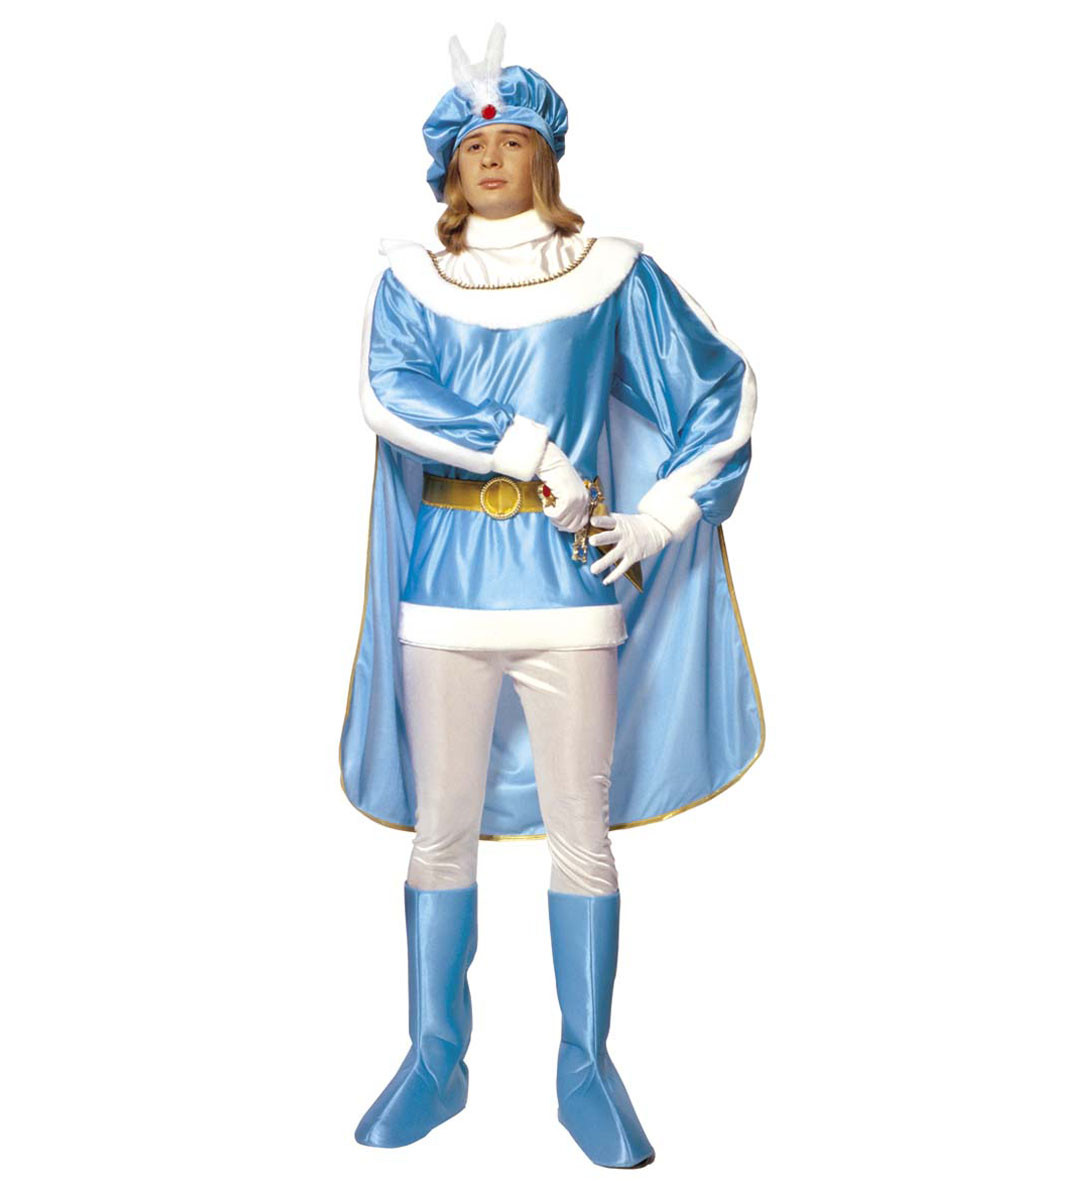 Costume Carnevale Adulto Travestimento Principe Azzurro PS 19650 Prince